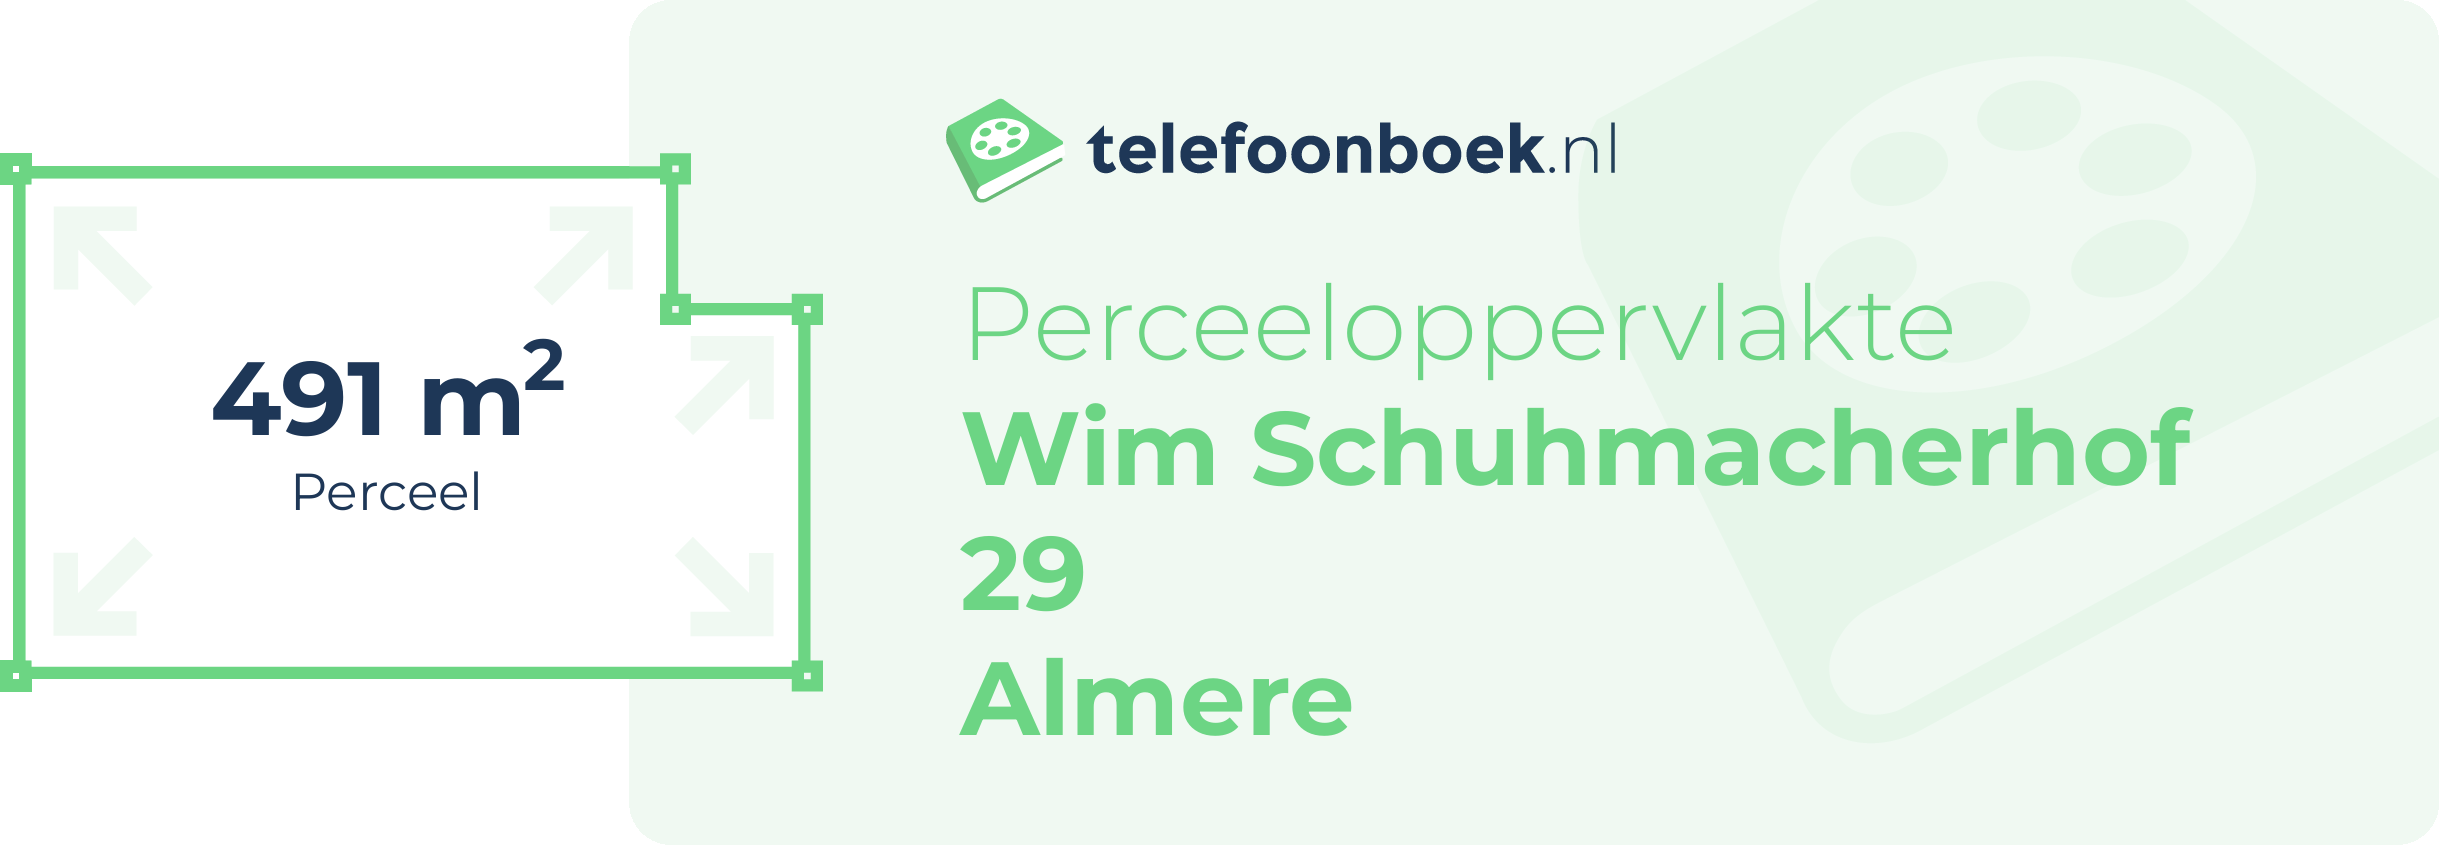 Perceeloppervlakte Wim Schuhmacherhof 29 Almere